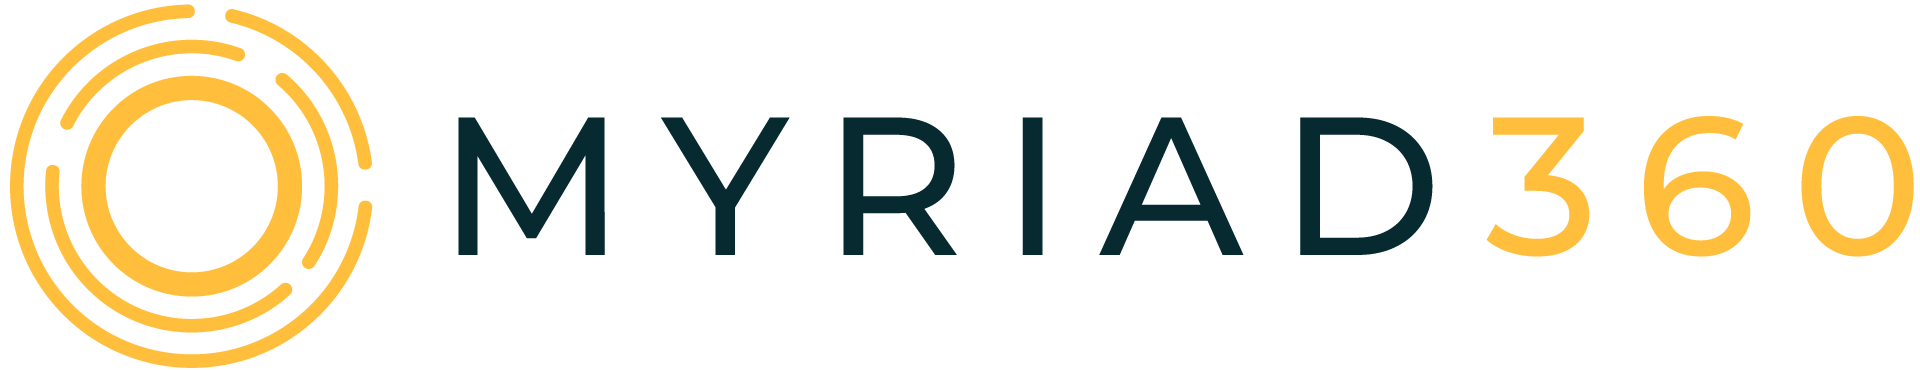 MYRIAD360-logo-positive-RGB